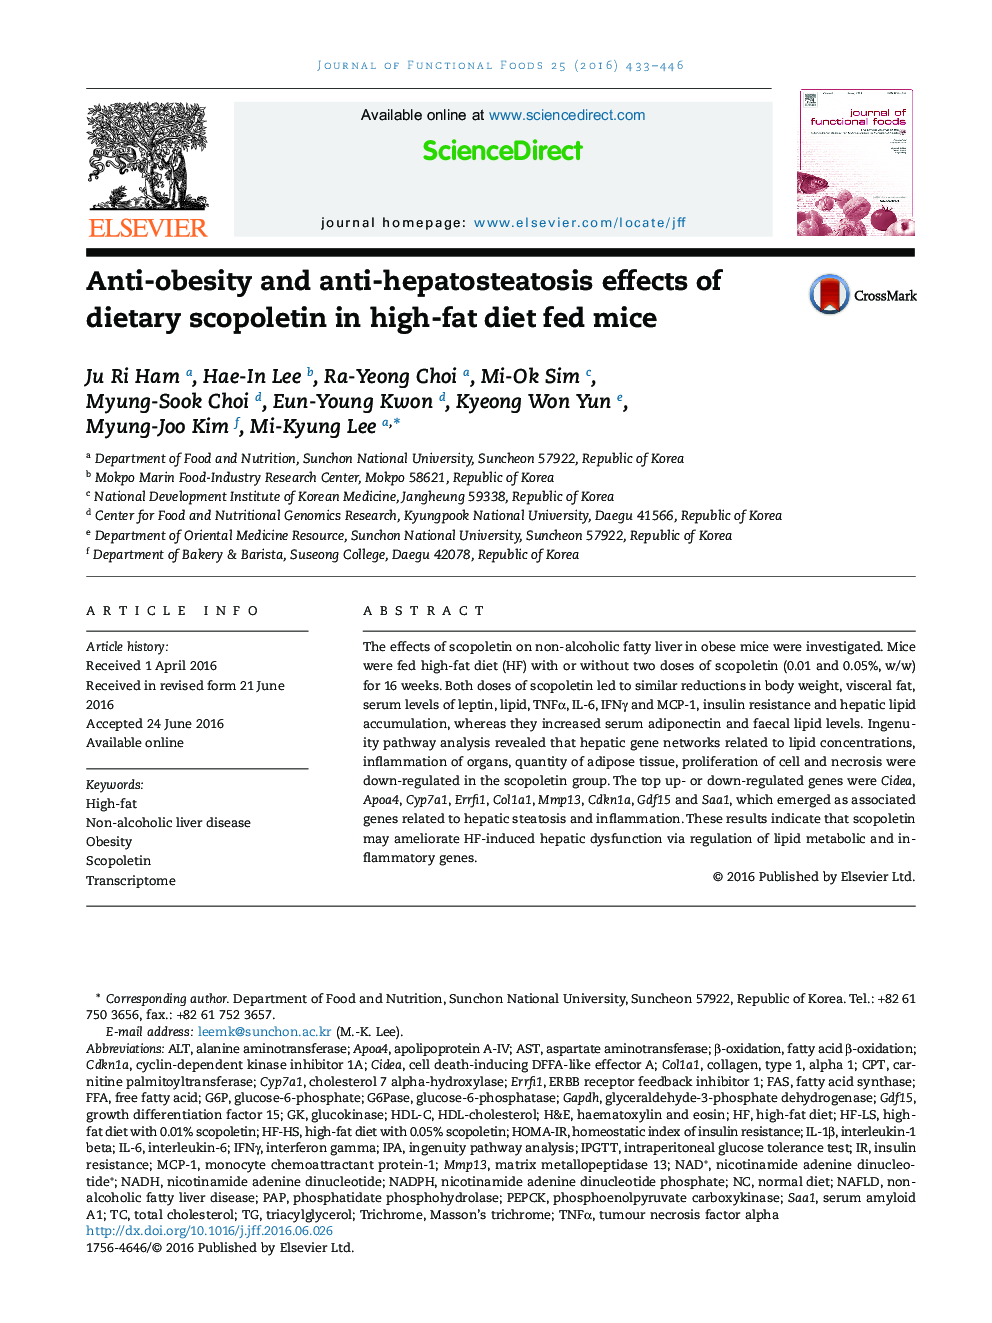 اثرات ضد چاقی و ضد هپاتوستاتوز در رژیم غذایی اسکوپولیتین در رژیم غذایی با تغذیه با تغذیه موش 